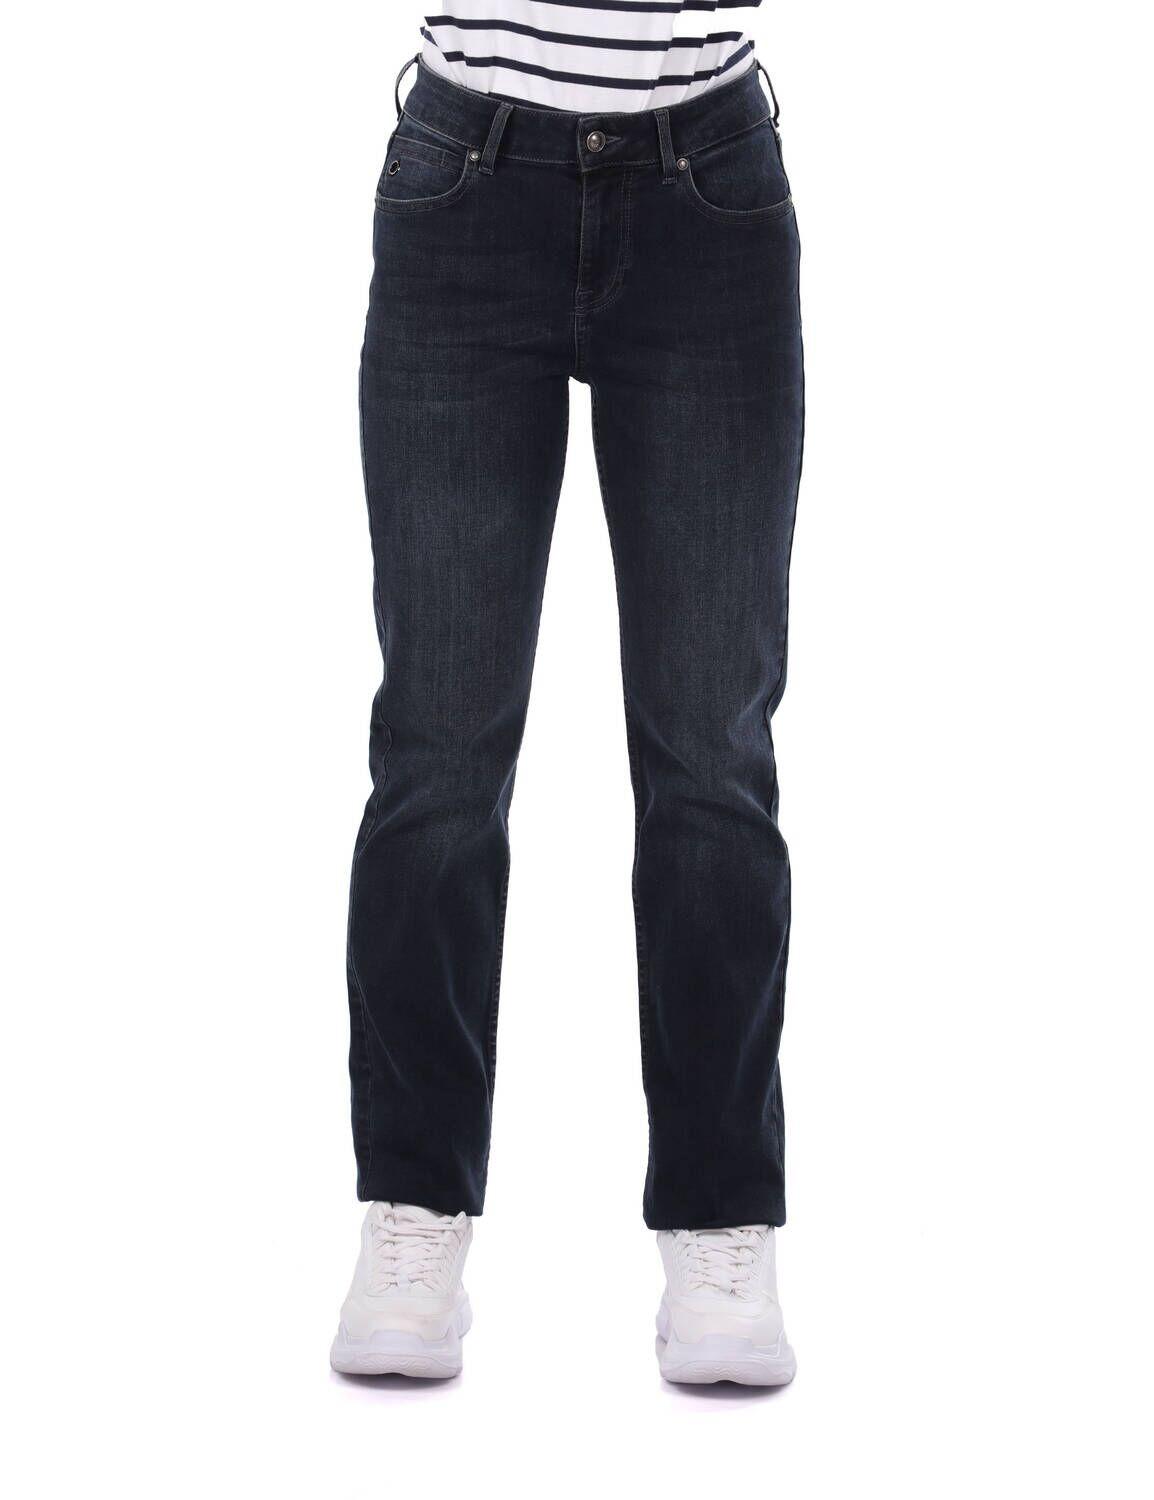 Blue White Blauw-witte jeansbroek voor dames, normale pasvorm